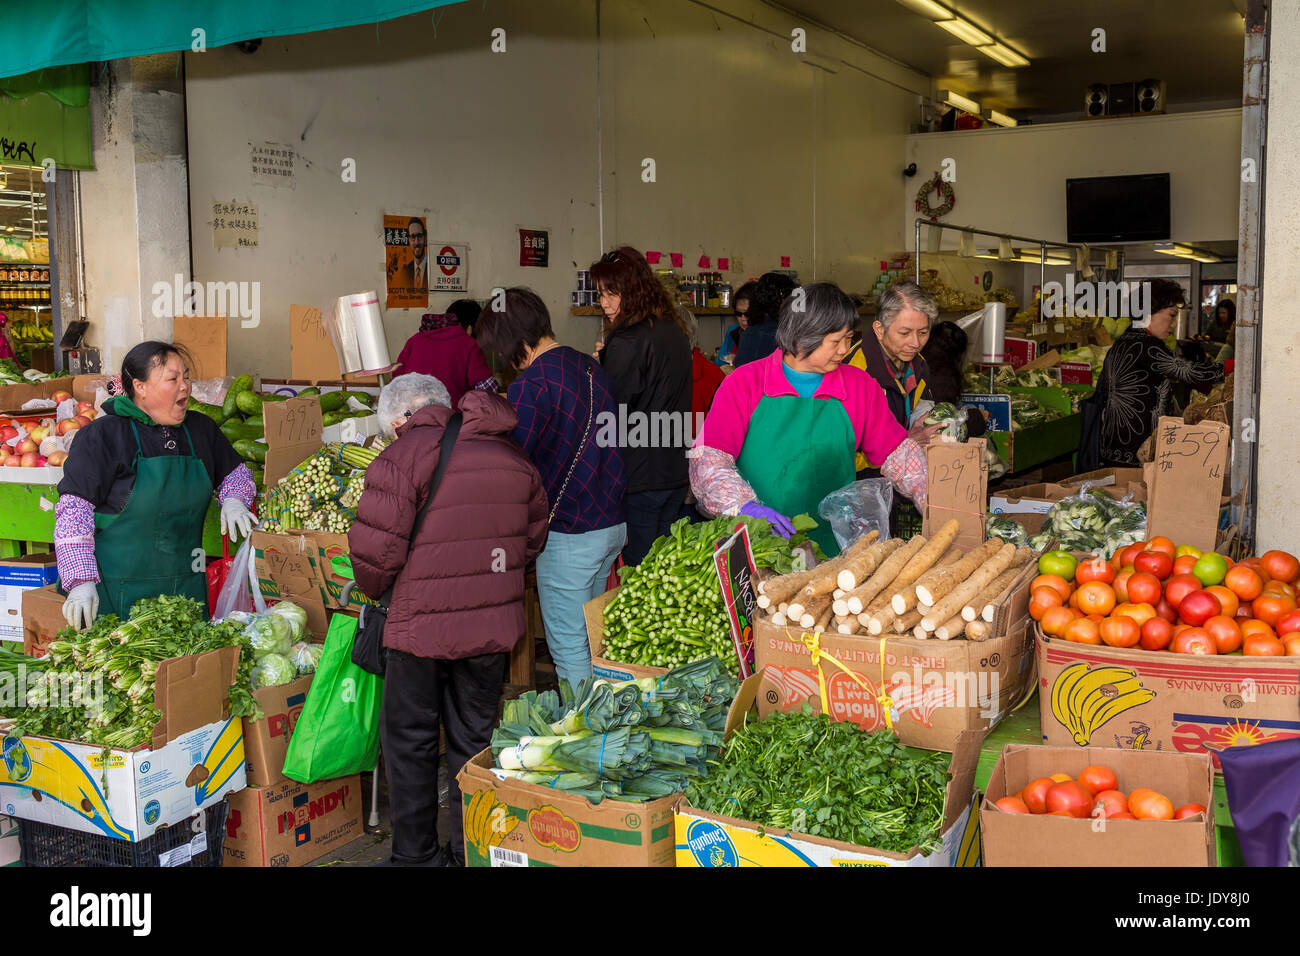 Chinese-américains, chinois, américains, Shoppers, shopping, marché de fruits et légumes, stockton Street, Chinatown, San Francisco, Californie Banque D'Images